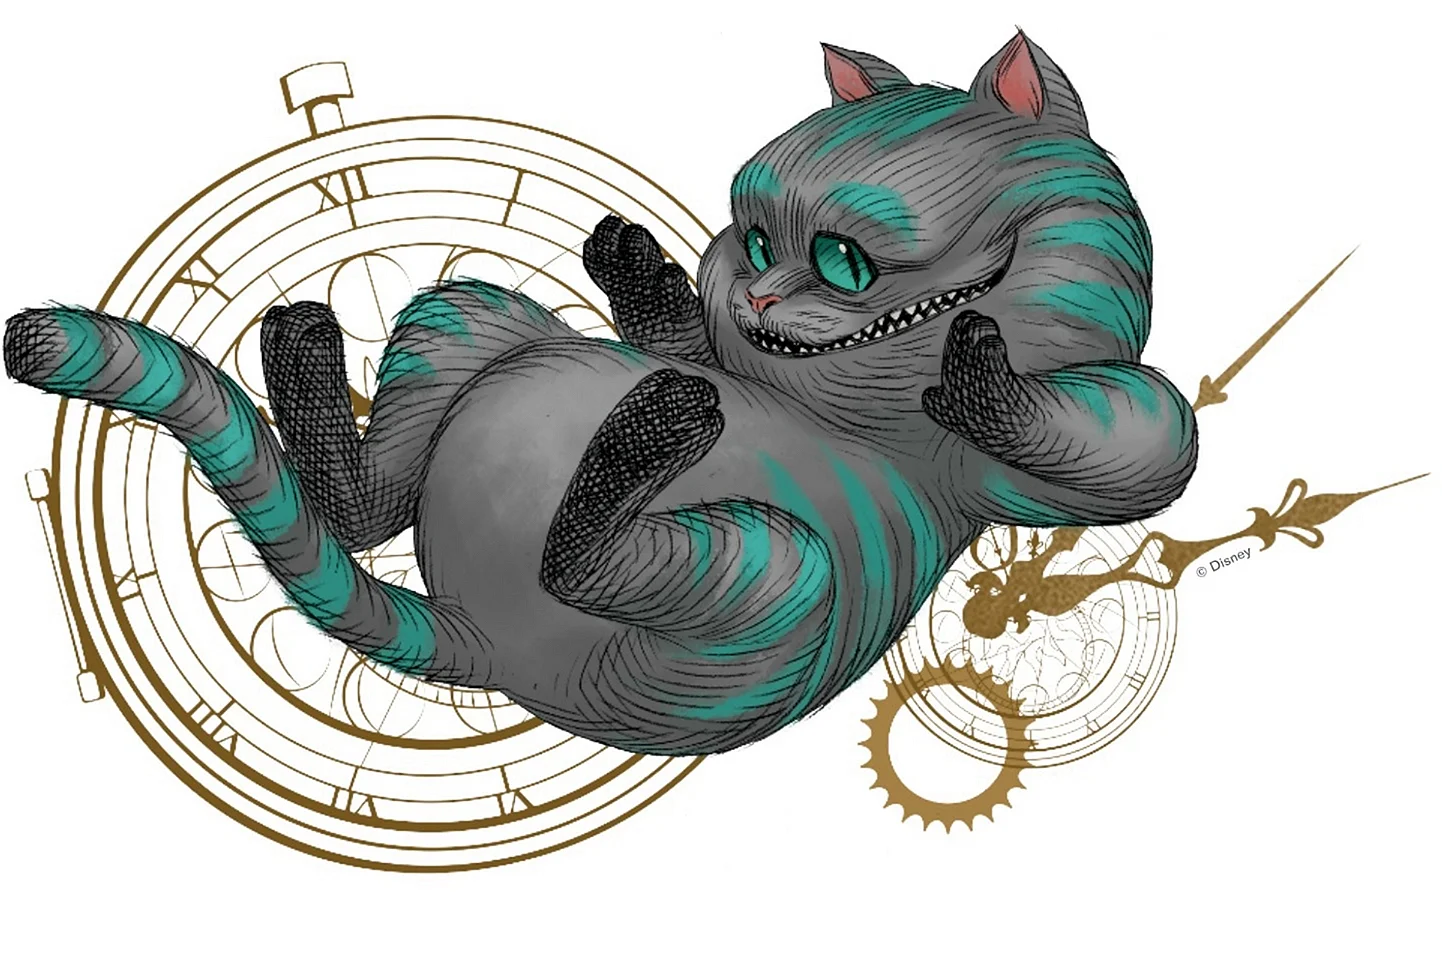 Чеширский кот из Алисы в стране чудес рисунки